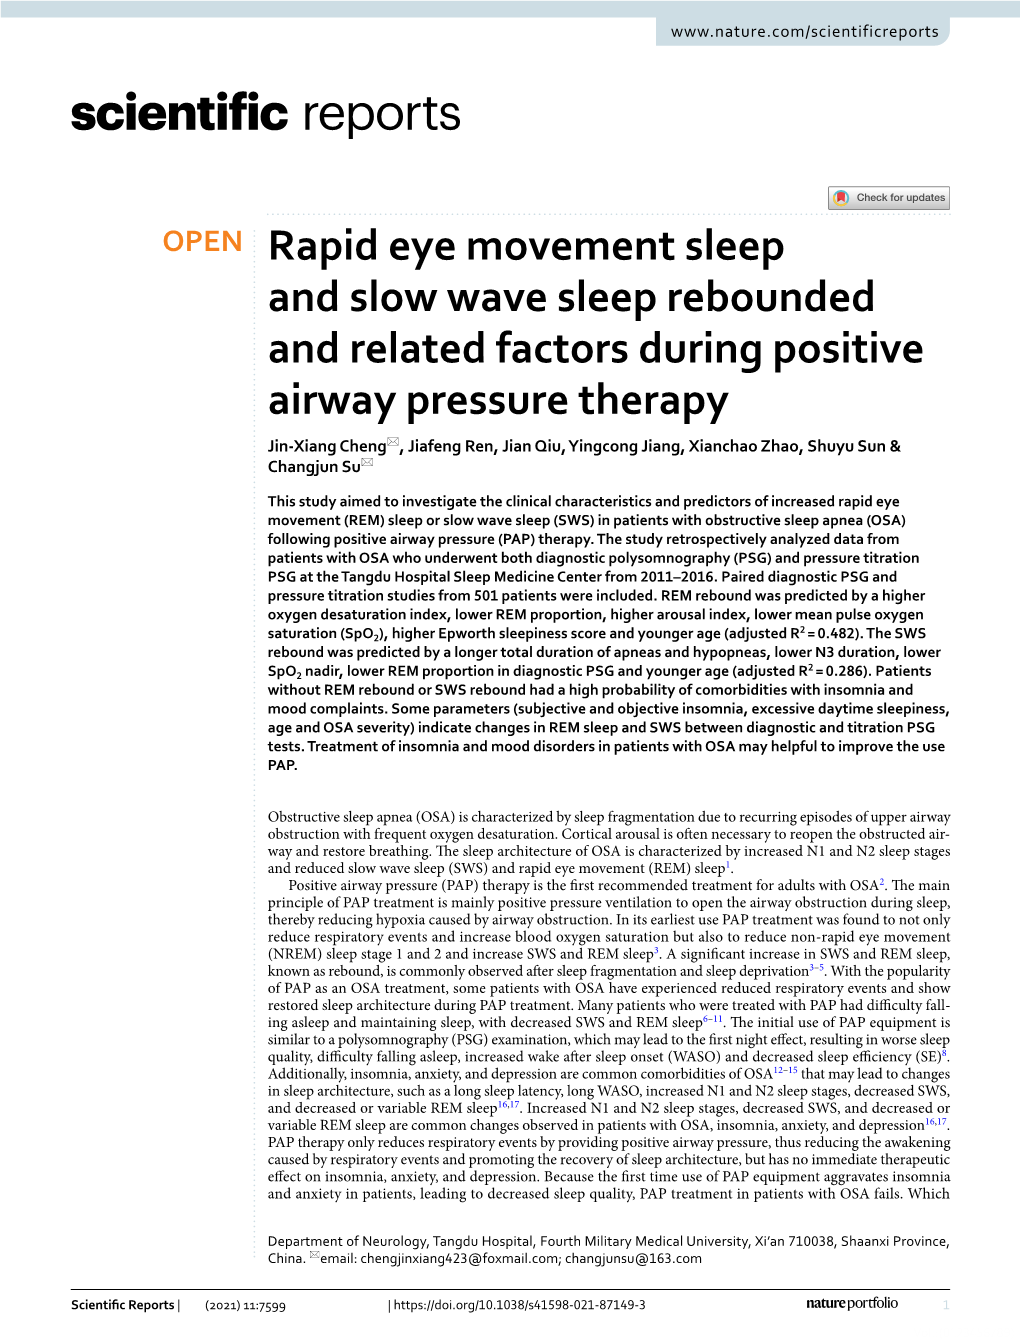 Rapid Eye Movement Sleep and Slow Wave Sleep Rebounded and Related